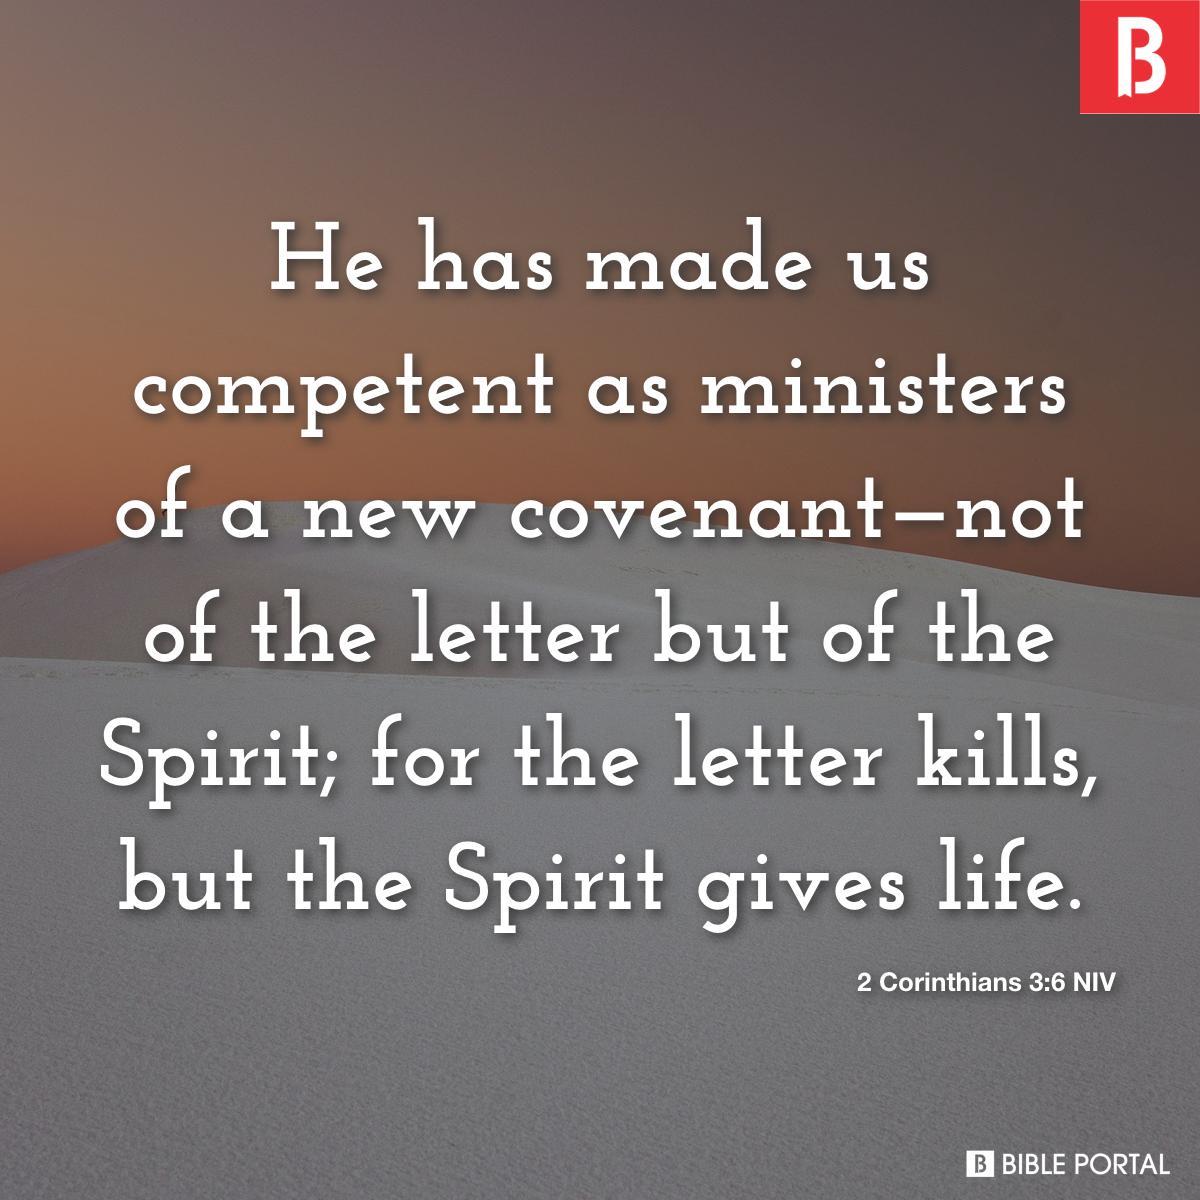 2 Corinthians 3:6 NIV